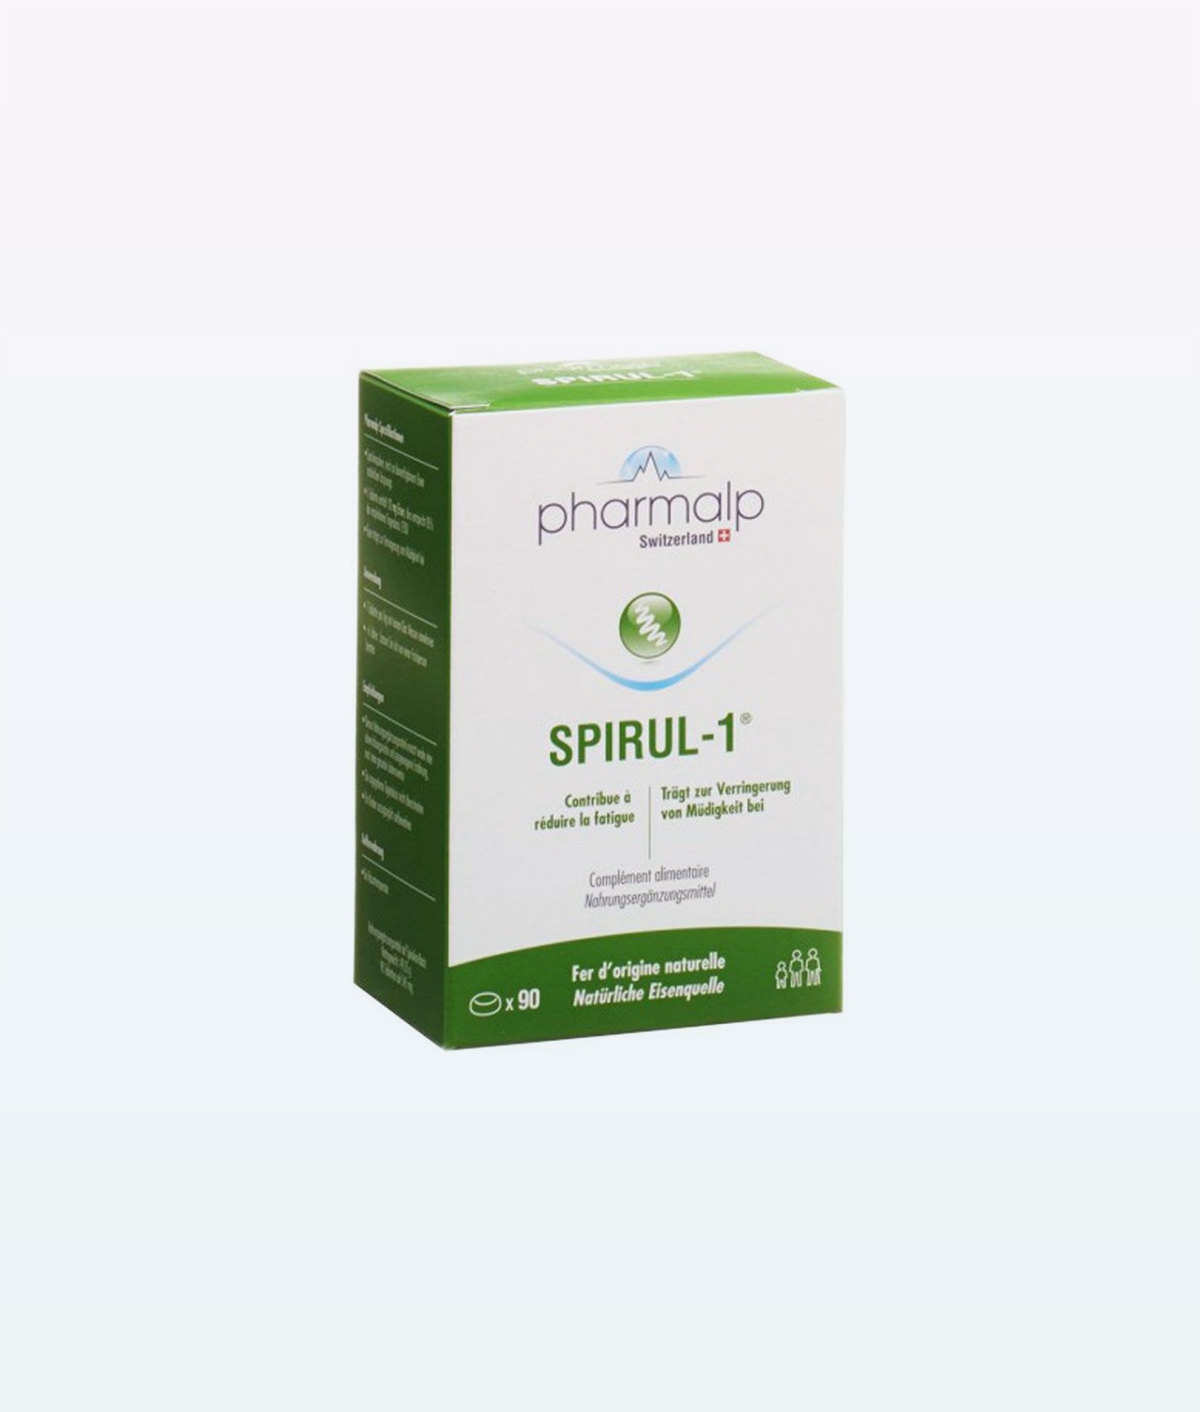 Pharmalp Spirul-1 Supplements, spirul 90 - Swiss Made Direct - pharmalp spirul-1 supplements, pharmalp supplements